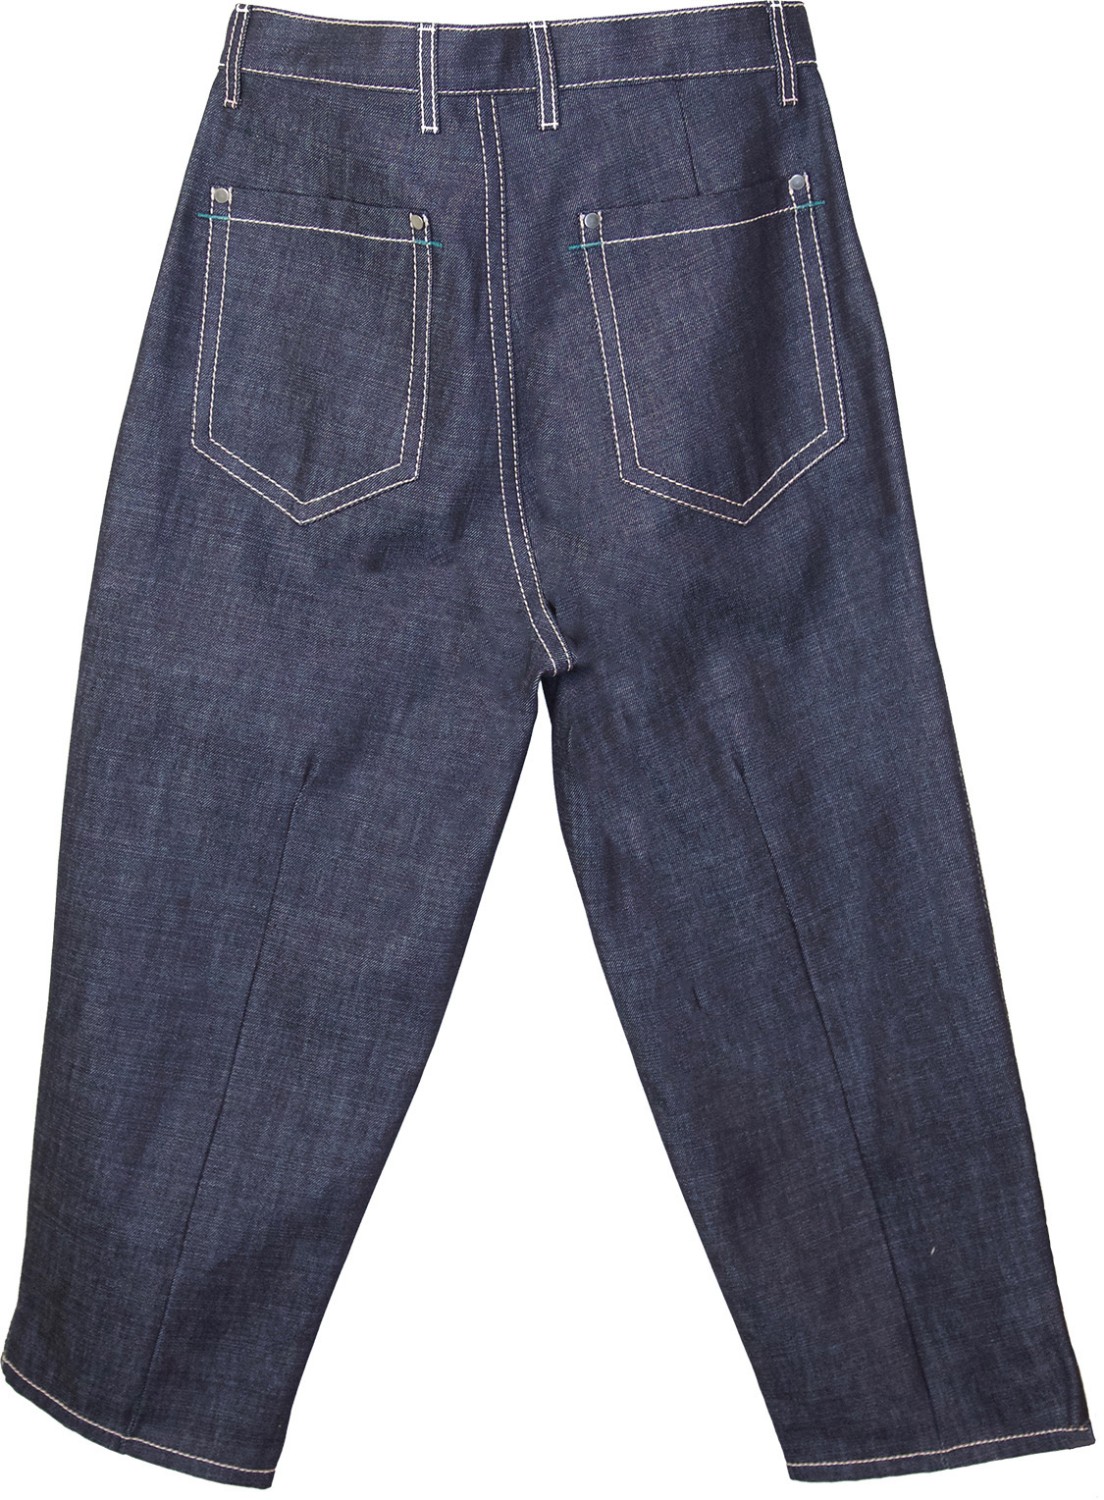 shop Marni  Pantaloni: Pantalone Marni, jeans, modello oversize, colore indigo, quattro tasche, chiusura con cerniera e bottoni, cuciture a contrasto.

composizione: 100% cotone number 1182